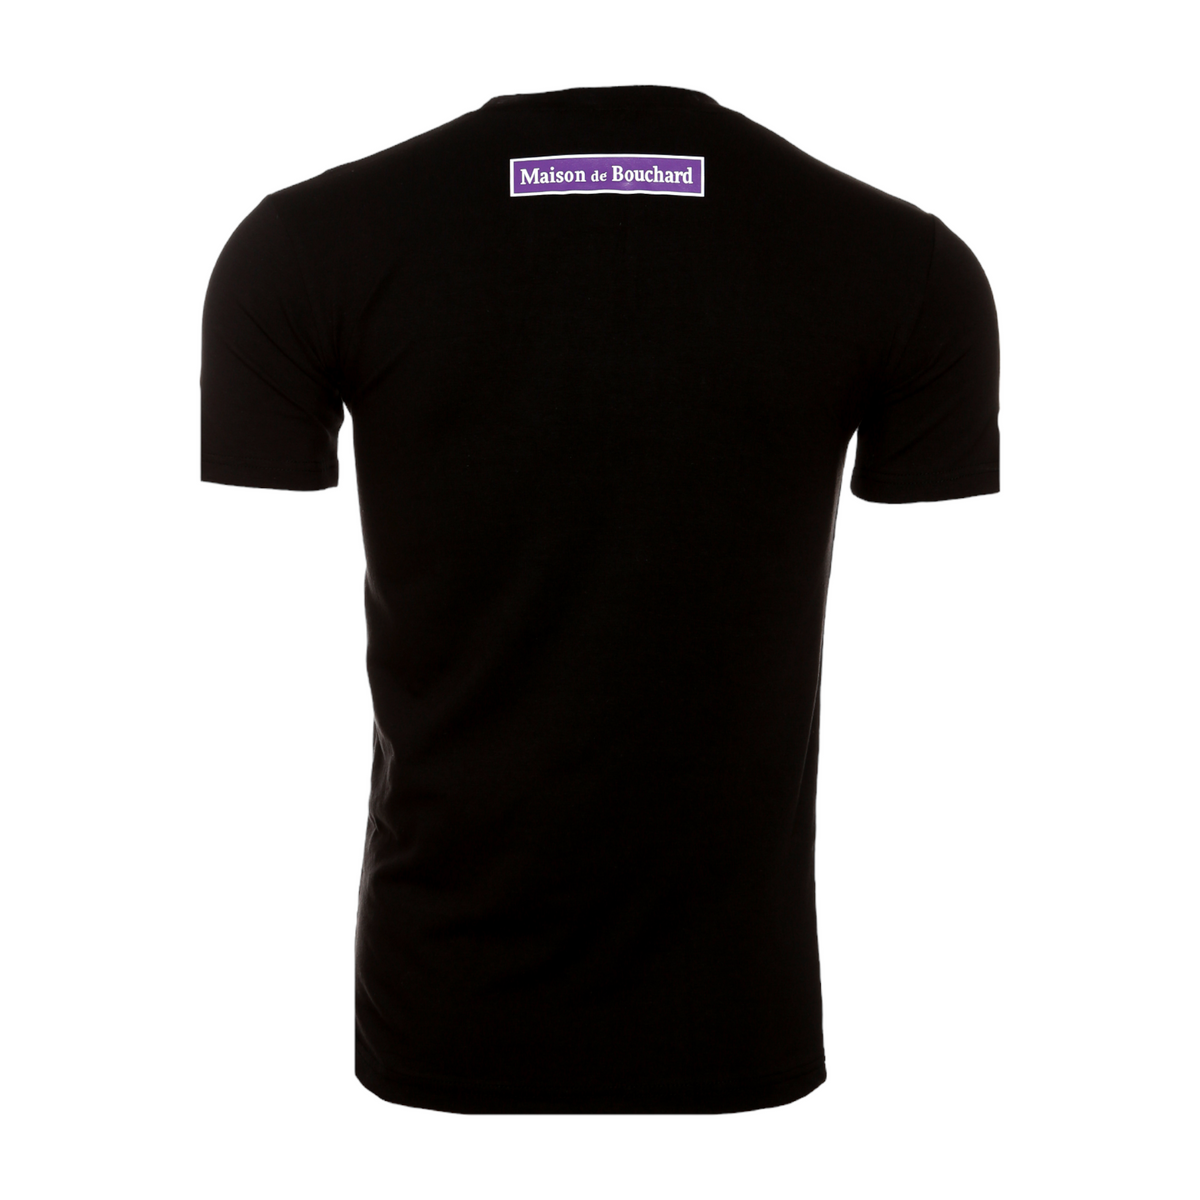 MDB Brand Men's Summer Circle AOP Logo T-Shirt - Black